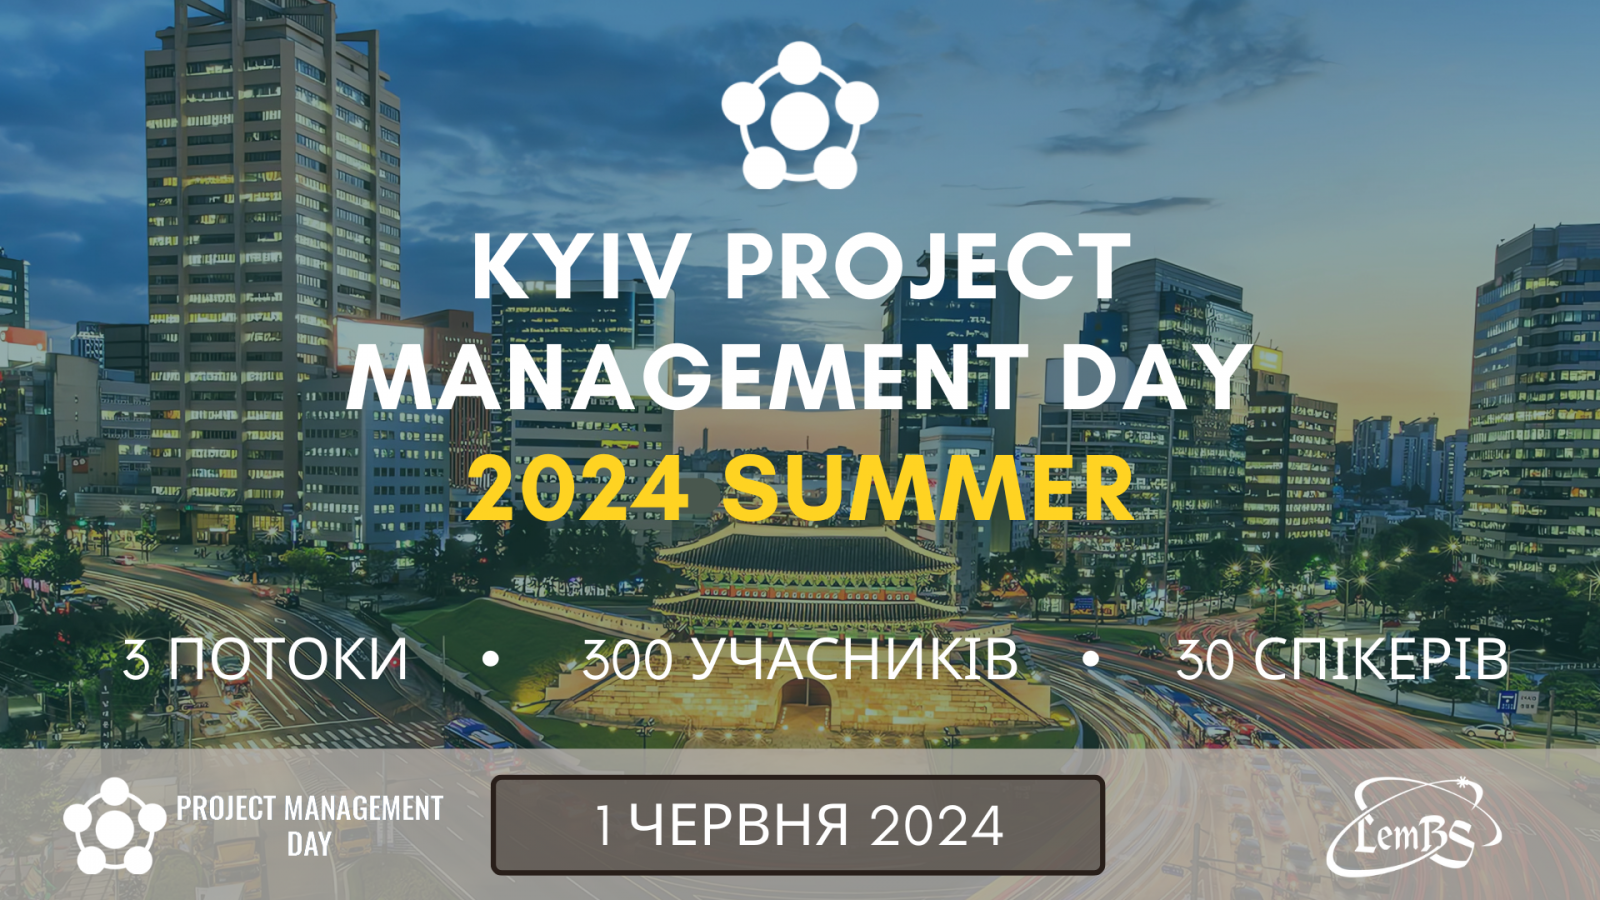 Kyiv PMDay 2024 Summer